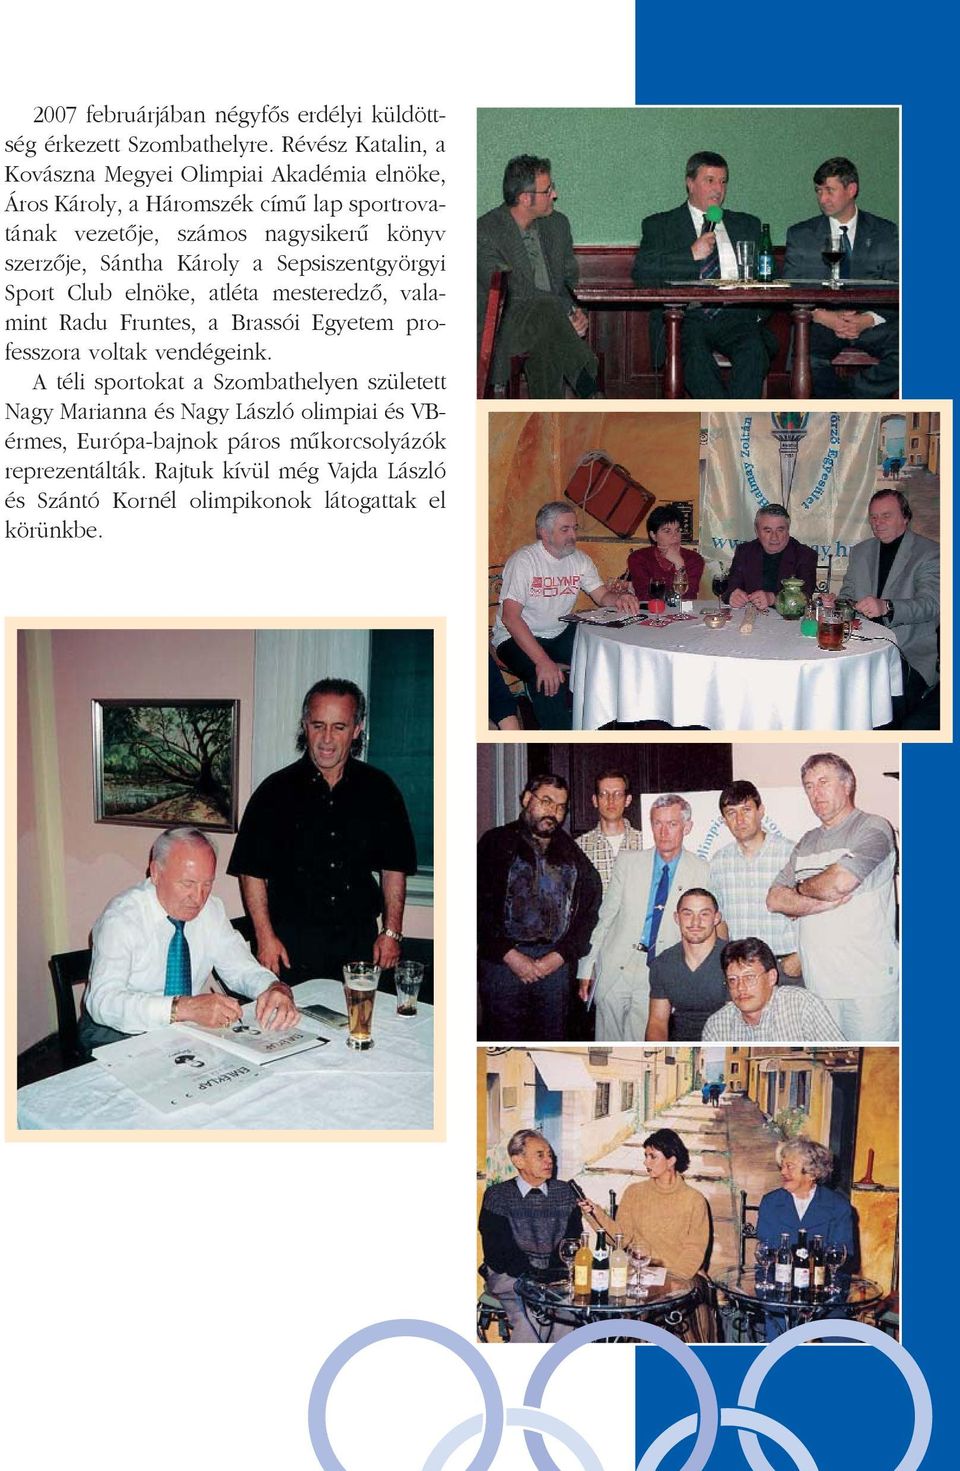 szerzõje, Sántha Károly a Sepsiszentgyörgyi Sport Club elnöke, atléta mesteredzõ, valamint Radu Fruntes, a Brassói Egyetem professzora voltak